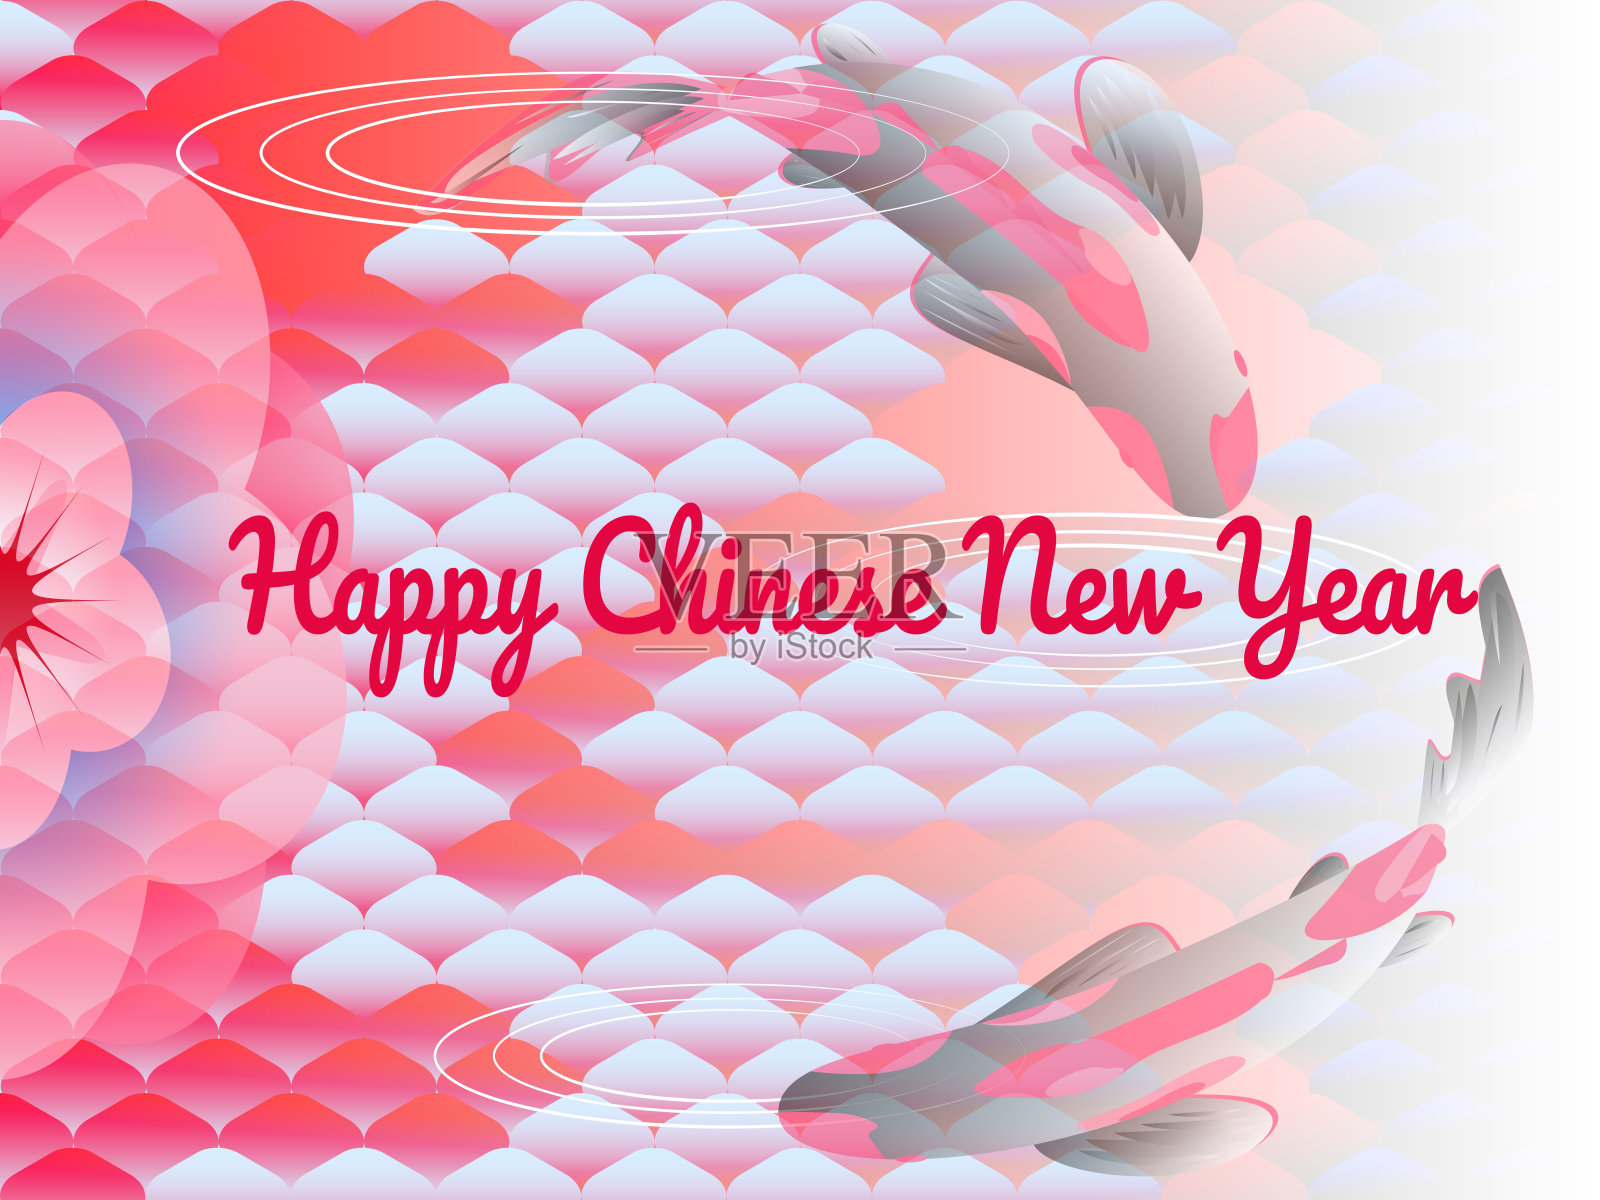 东方风格的节日横幅，文字-中国新年快乐，背景东方民族图案，鲤鱼鳞，鱼和花樱花。矢量插图,文字。插画图片素材